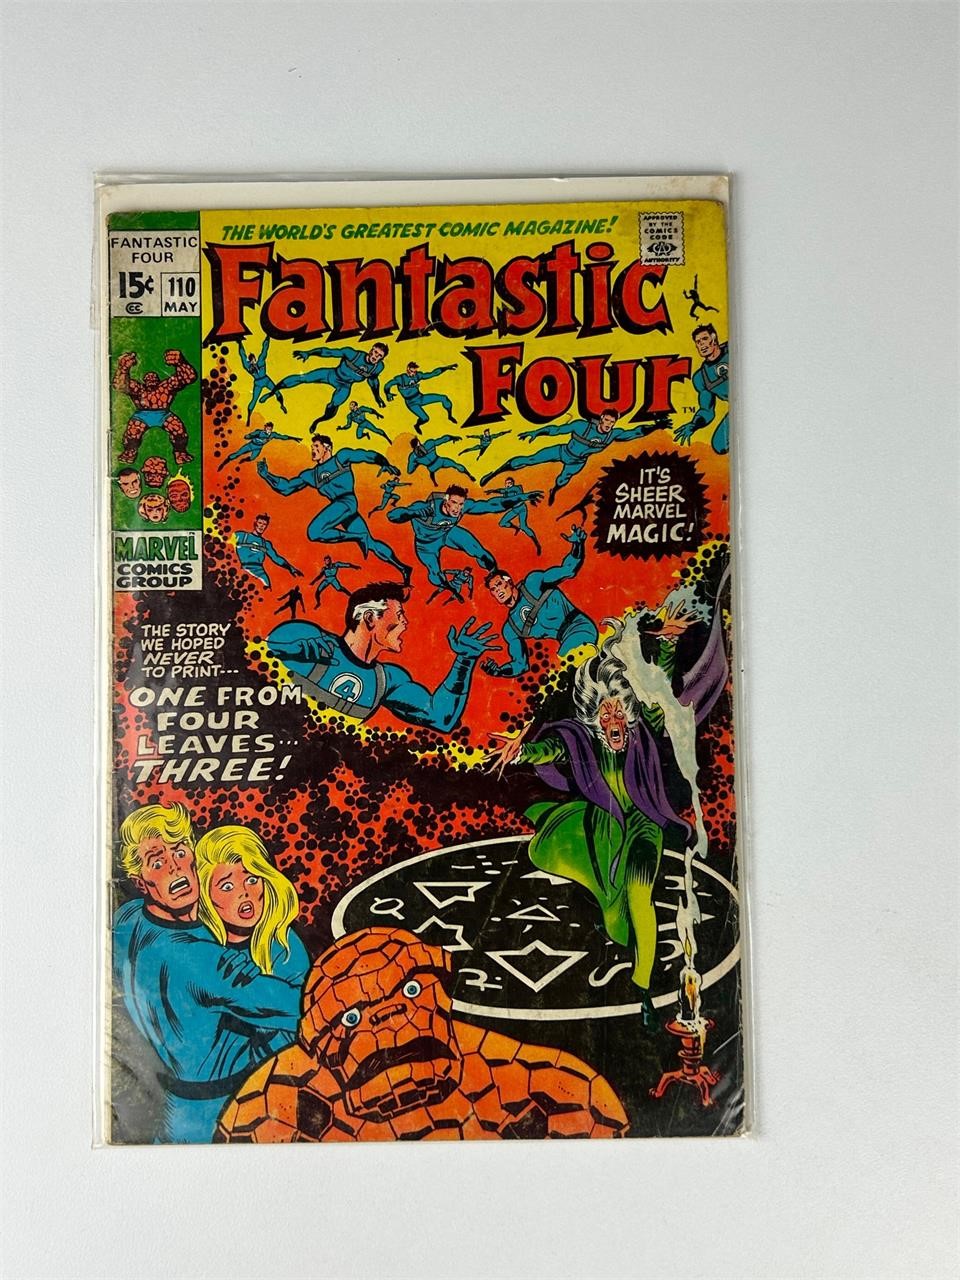 Fantastic Four X-Men vs Avengers comic books